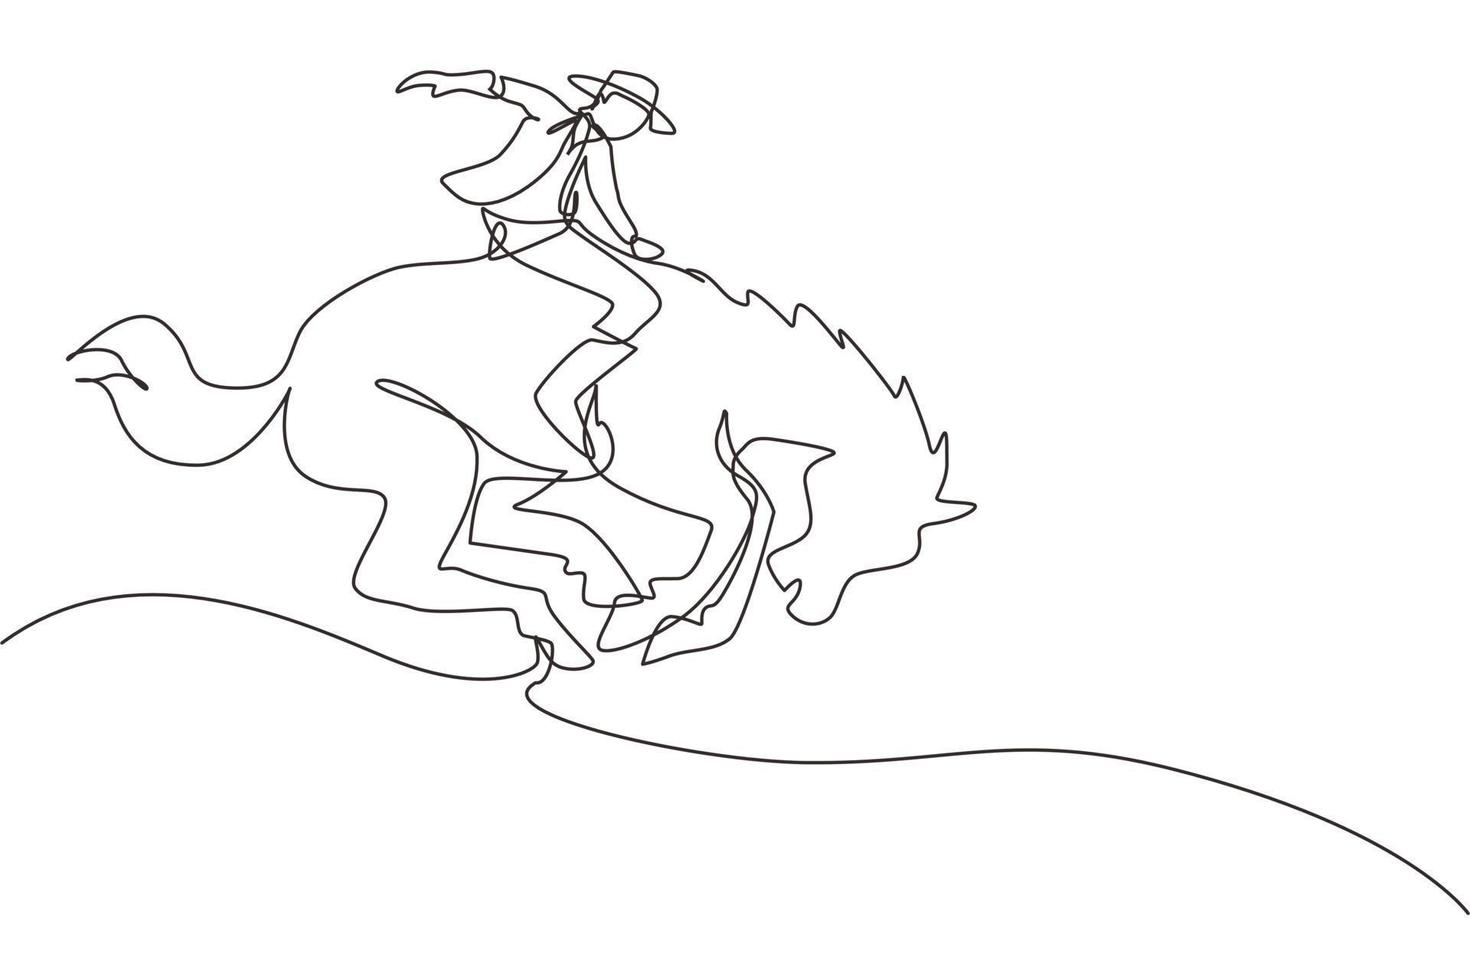 einzelne einzeilige zeichnung cowboy, der wildpferd beim rodeo zähmt. Cowboy auf Wildpferdmustang. Rodeo-Cowboy, der wildes Pferd auf Holzschild reitet. moderne grafische vektorillustration des ununterbrochenen zeichnendesigns vektor